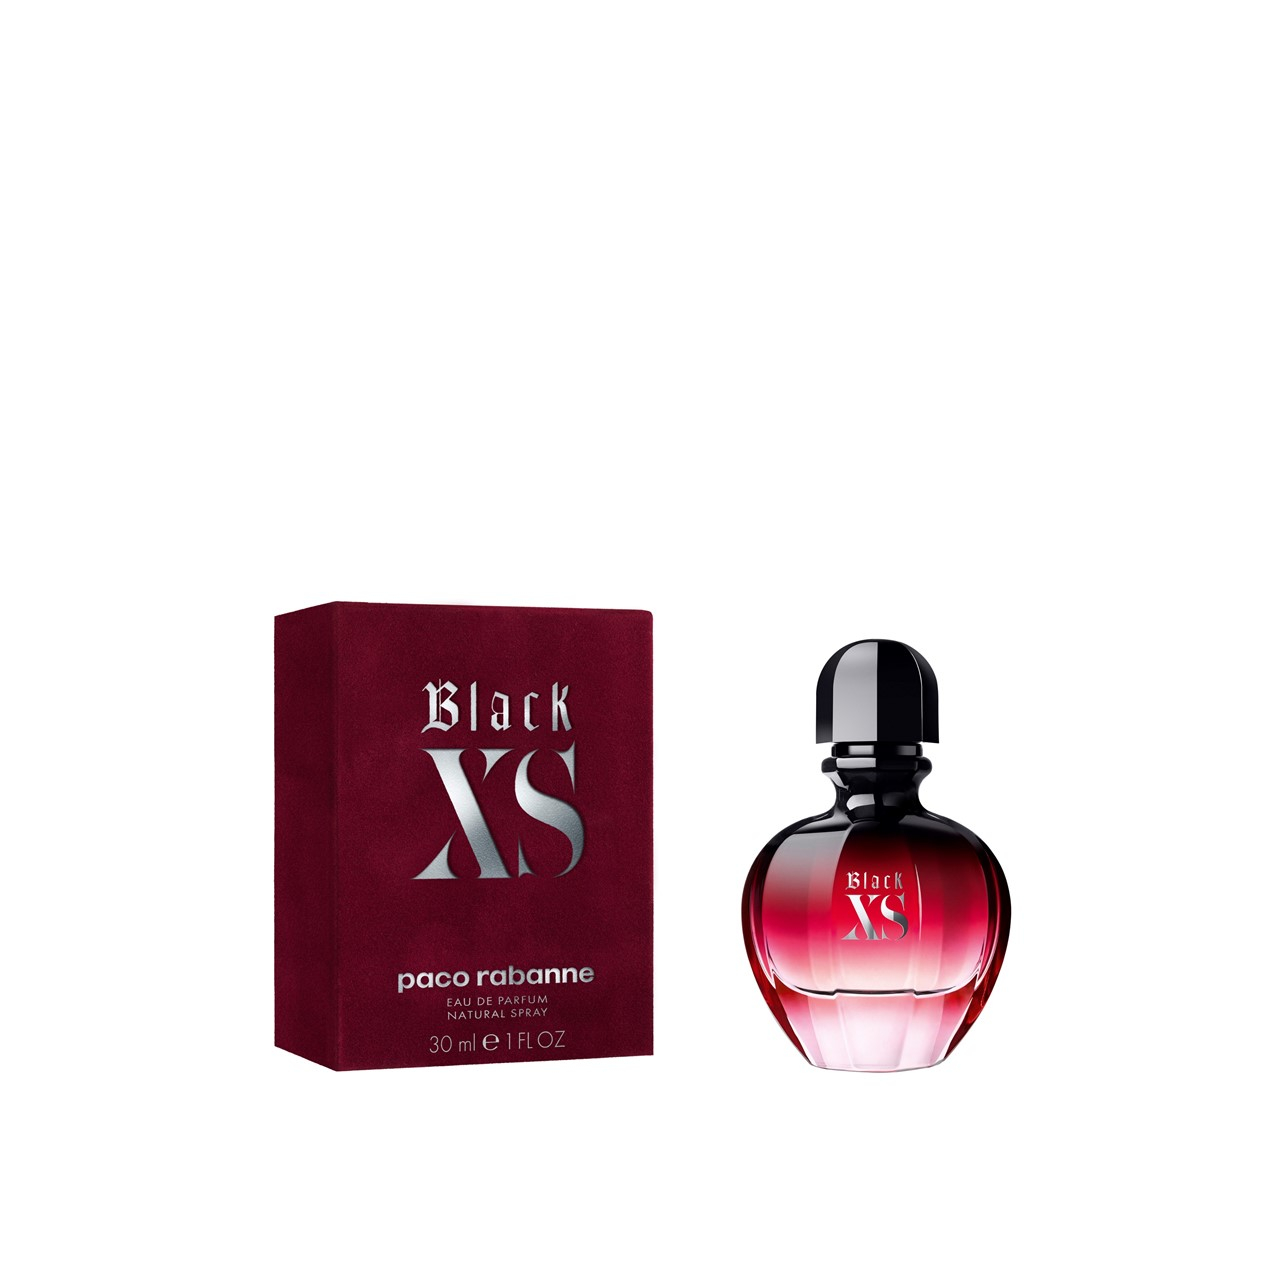 Paco Rabanne Black XS For Women Eau de Parfum 30ml (1.0fl oz)